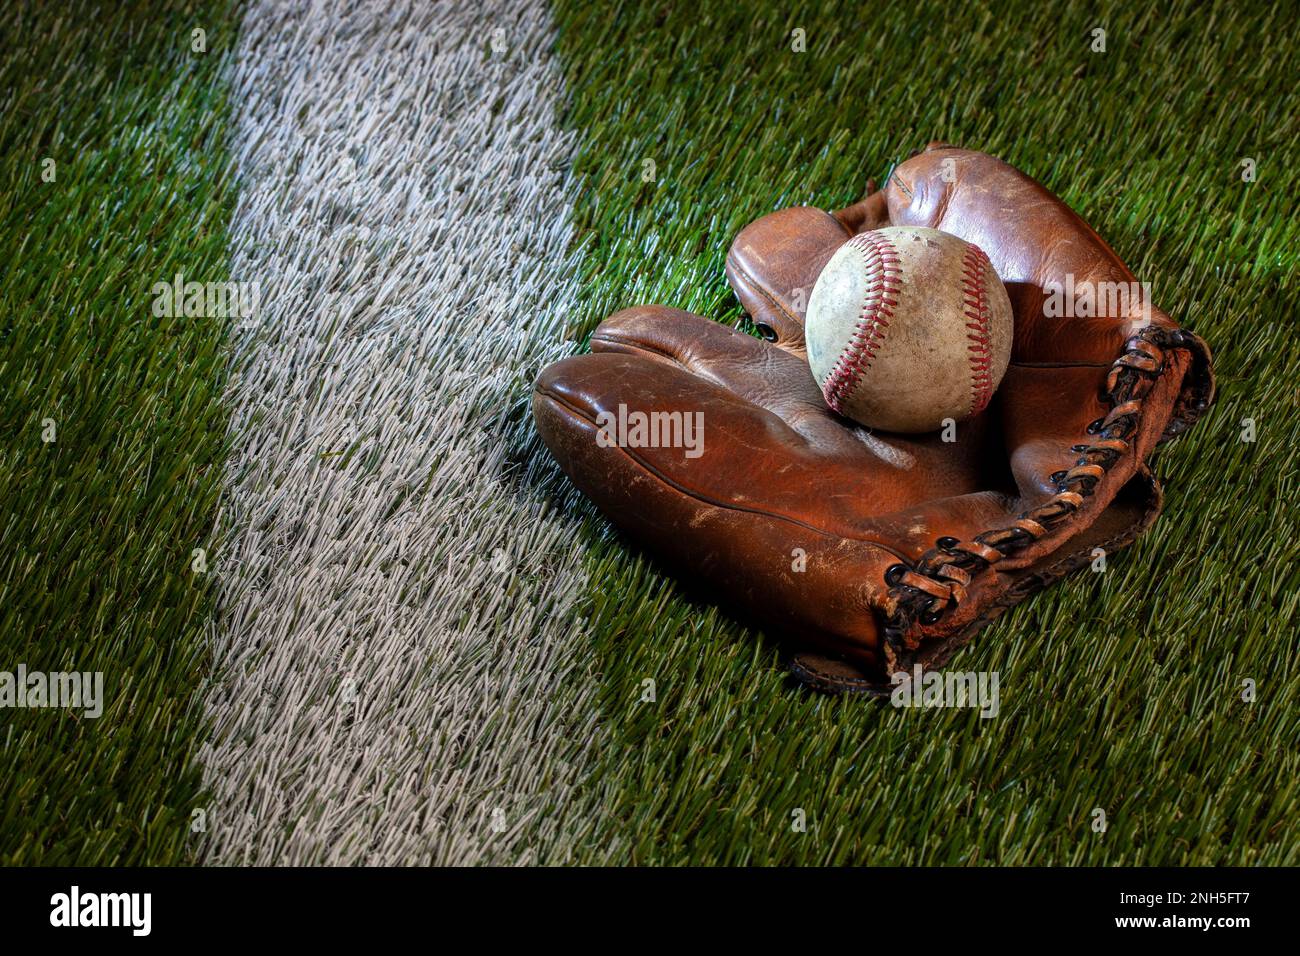 Old baseball en cuir marron mitt sur un terrain d'herbe avec une bande blanche Banque D'Images